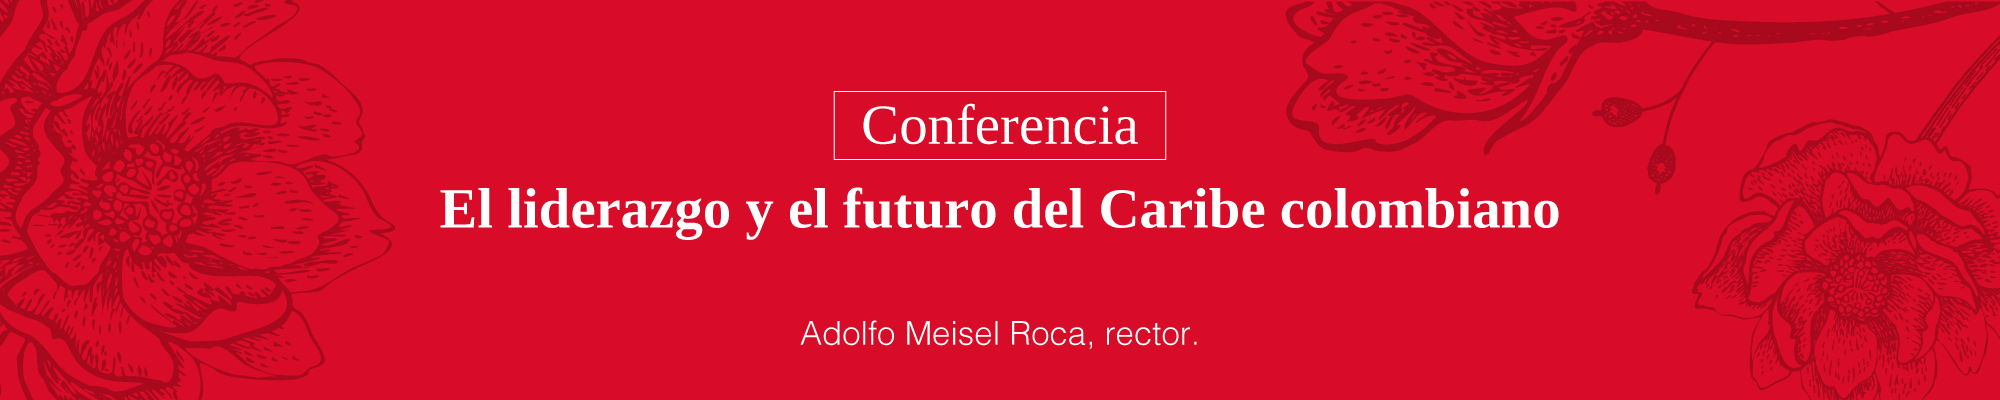 Imagen Conferencia El Liderazgo y el futuro del Caribe Colombiano